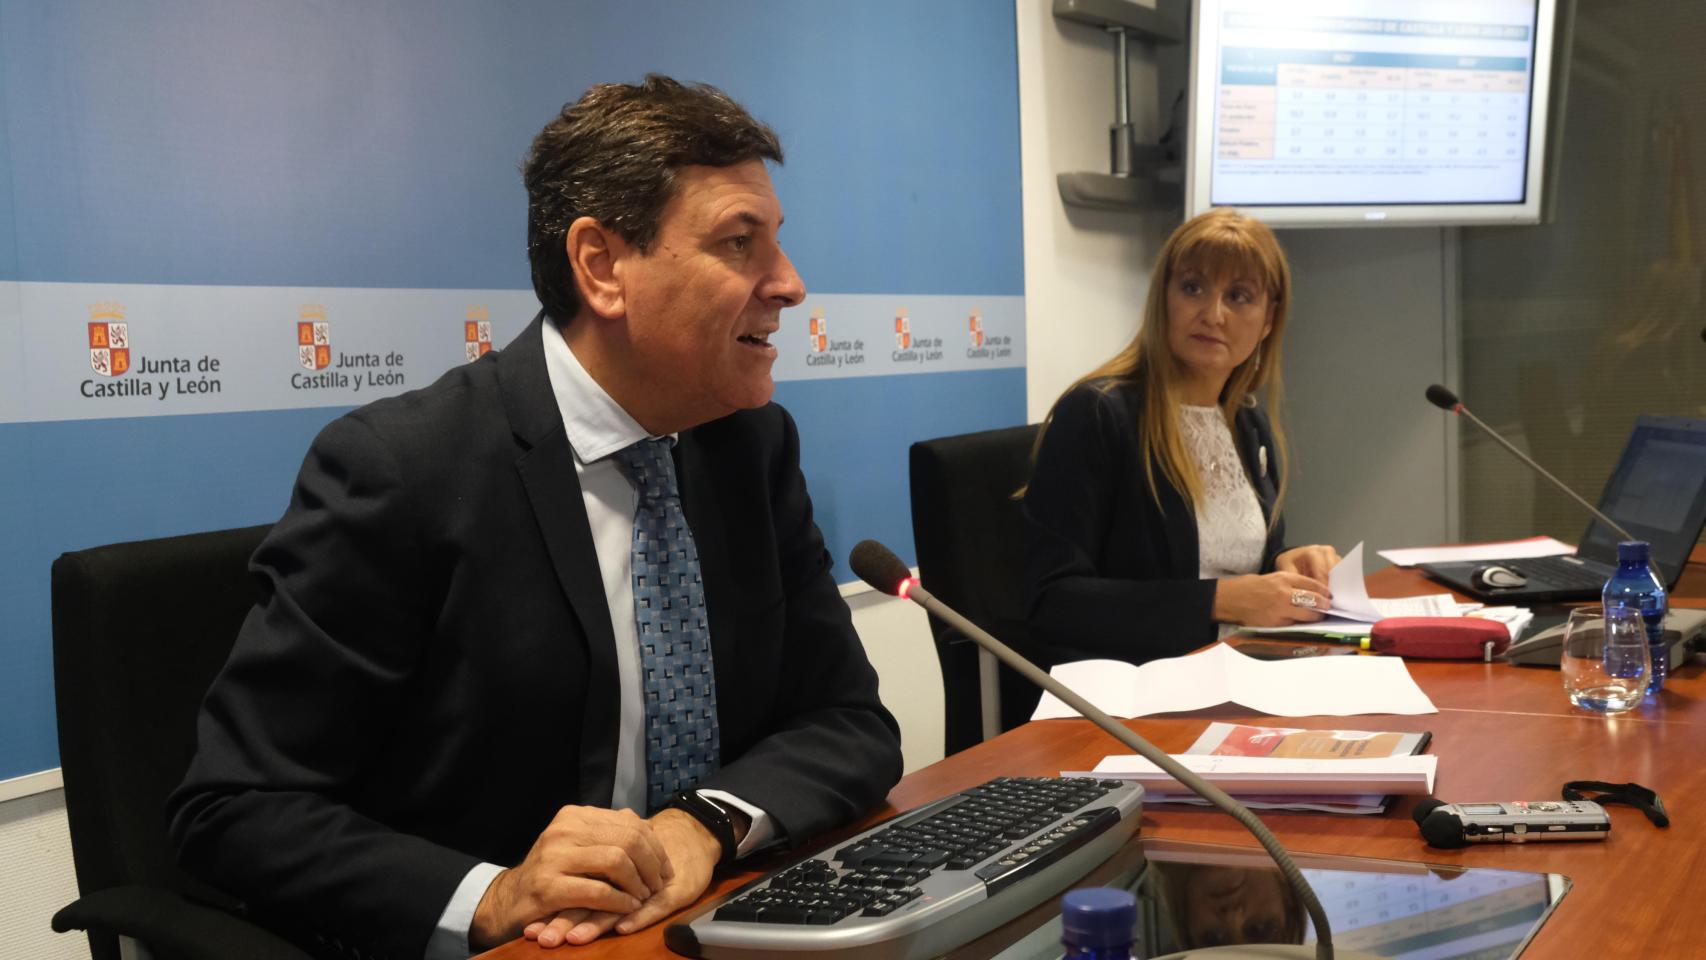 El consejero de Economía y Hacienda, Carlos Fernández Carriedo, presenta los presupuestos